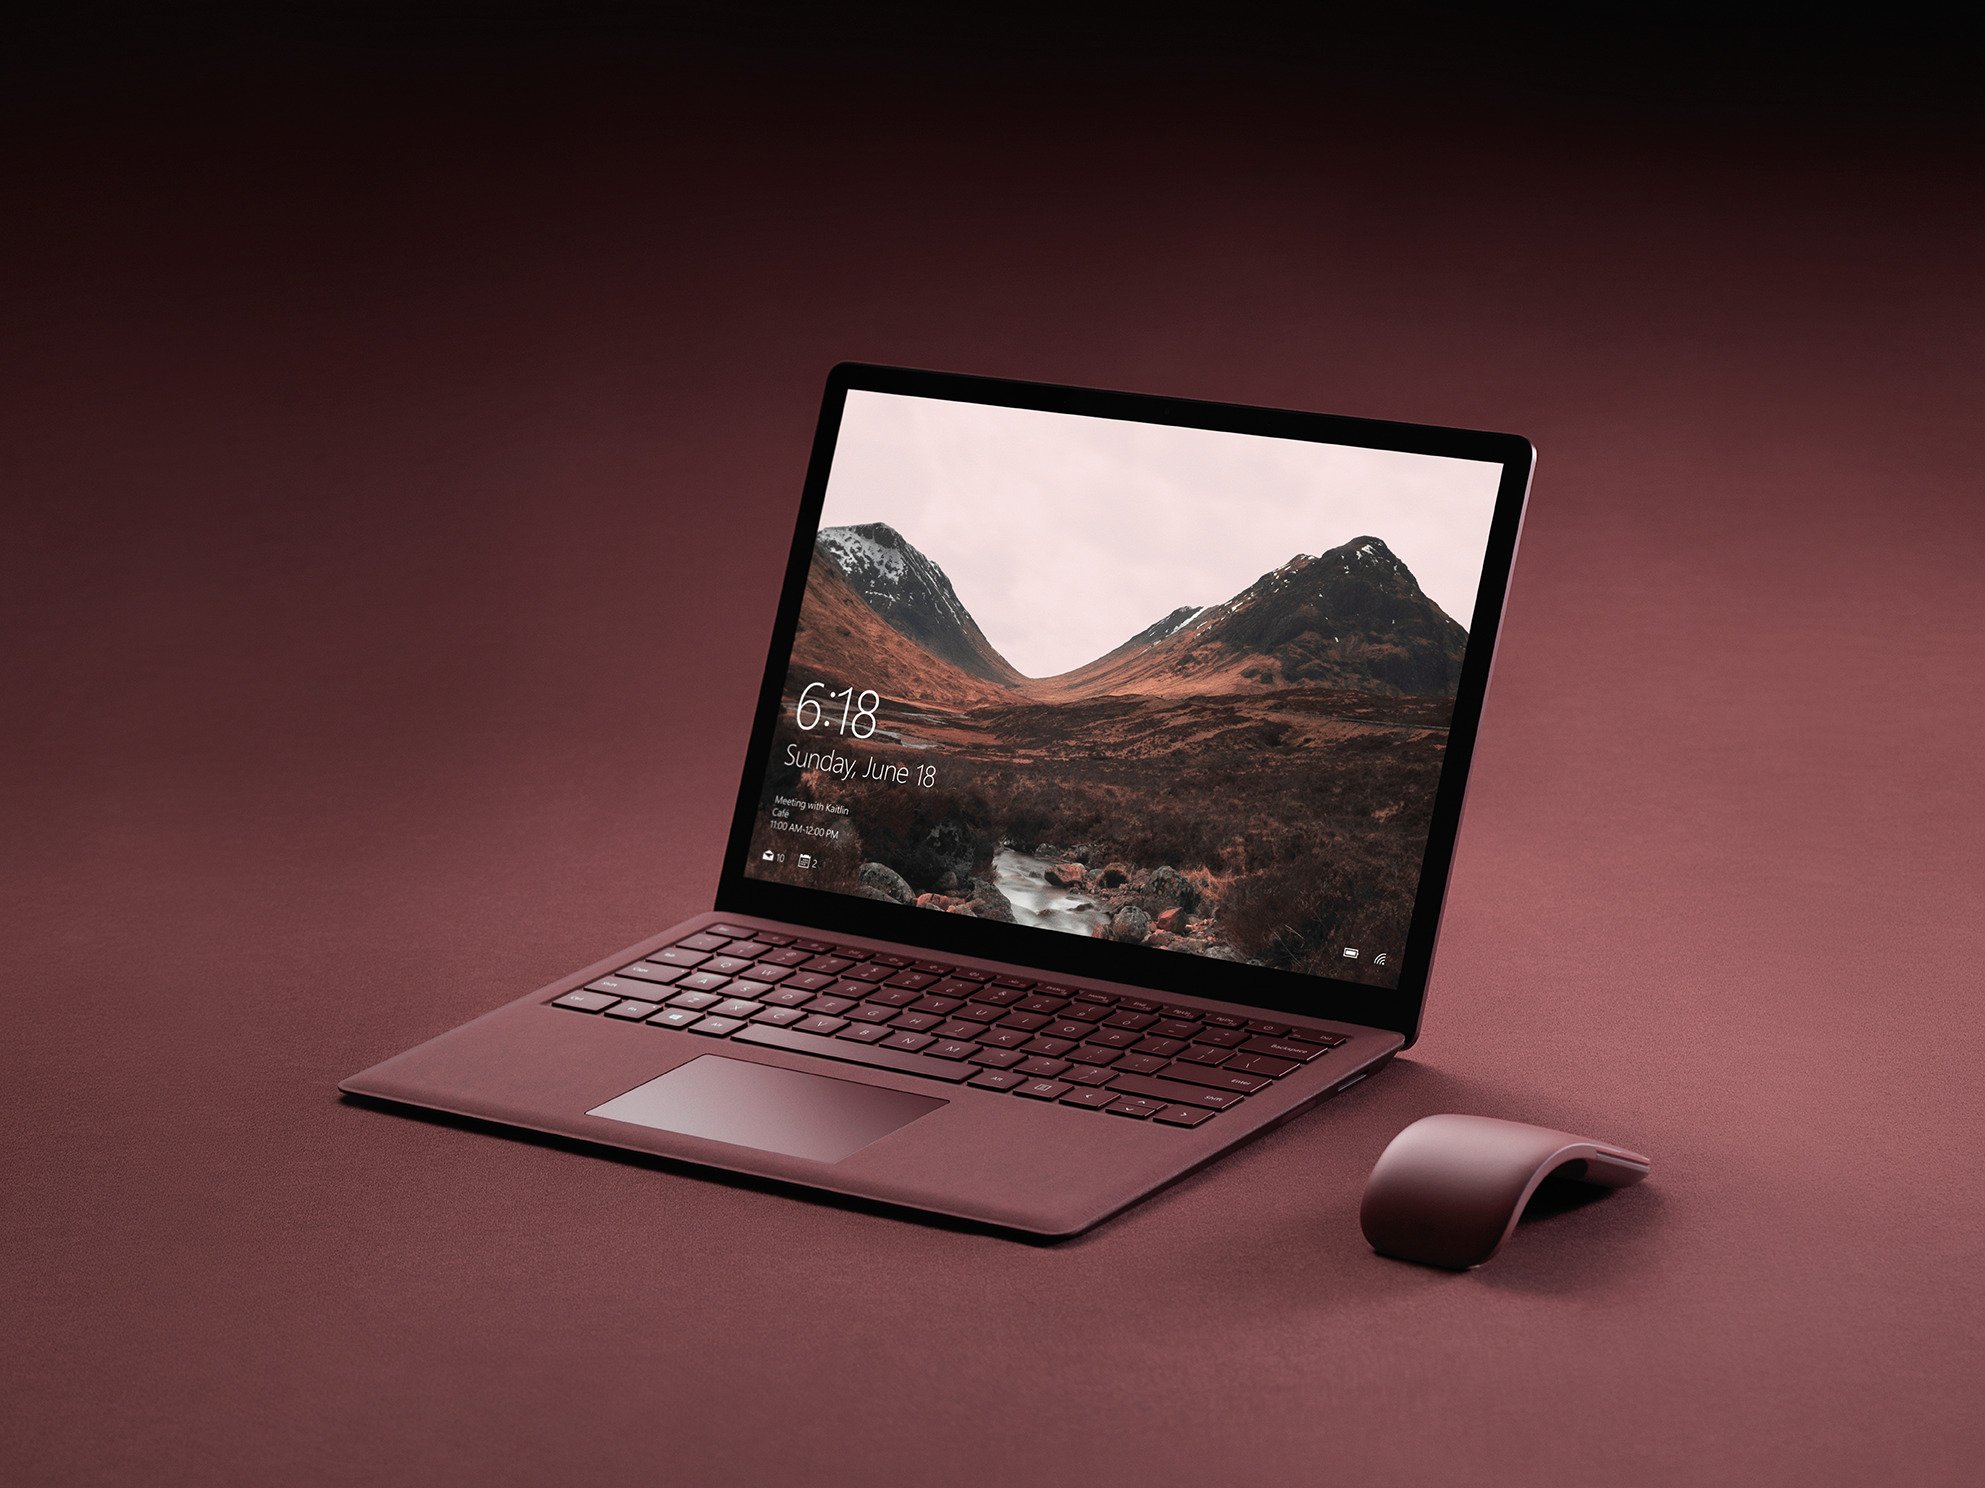 ｢Surface Laptop｣を購入したユーザーは年内であれば｢Windows 10 Pro｣に無料でアップグレード可能